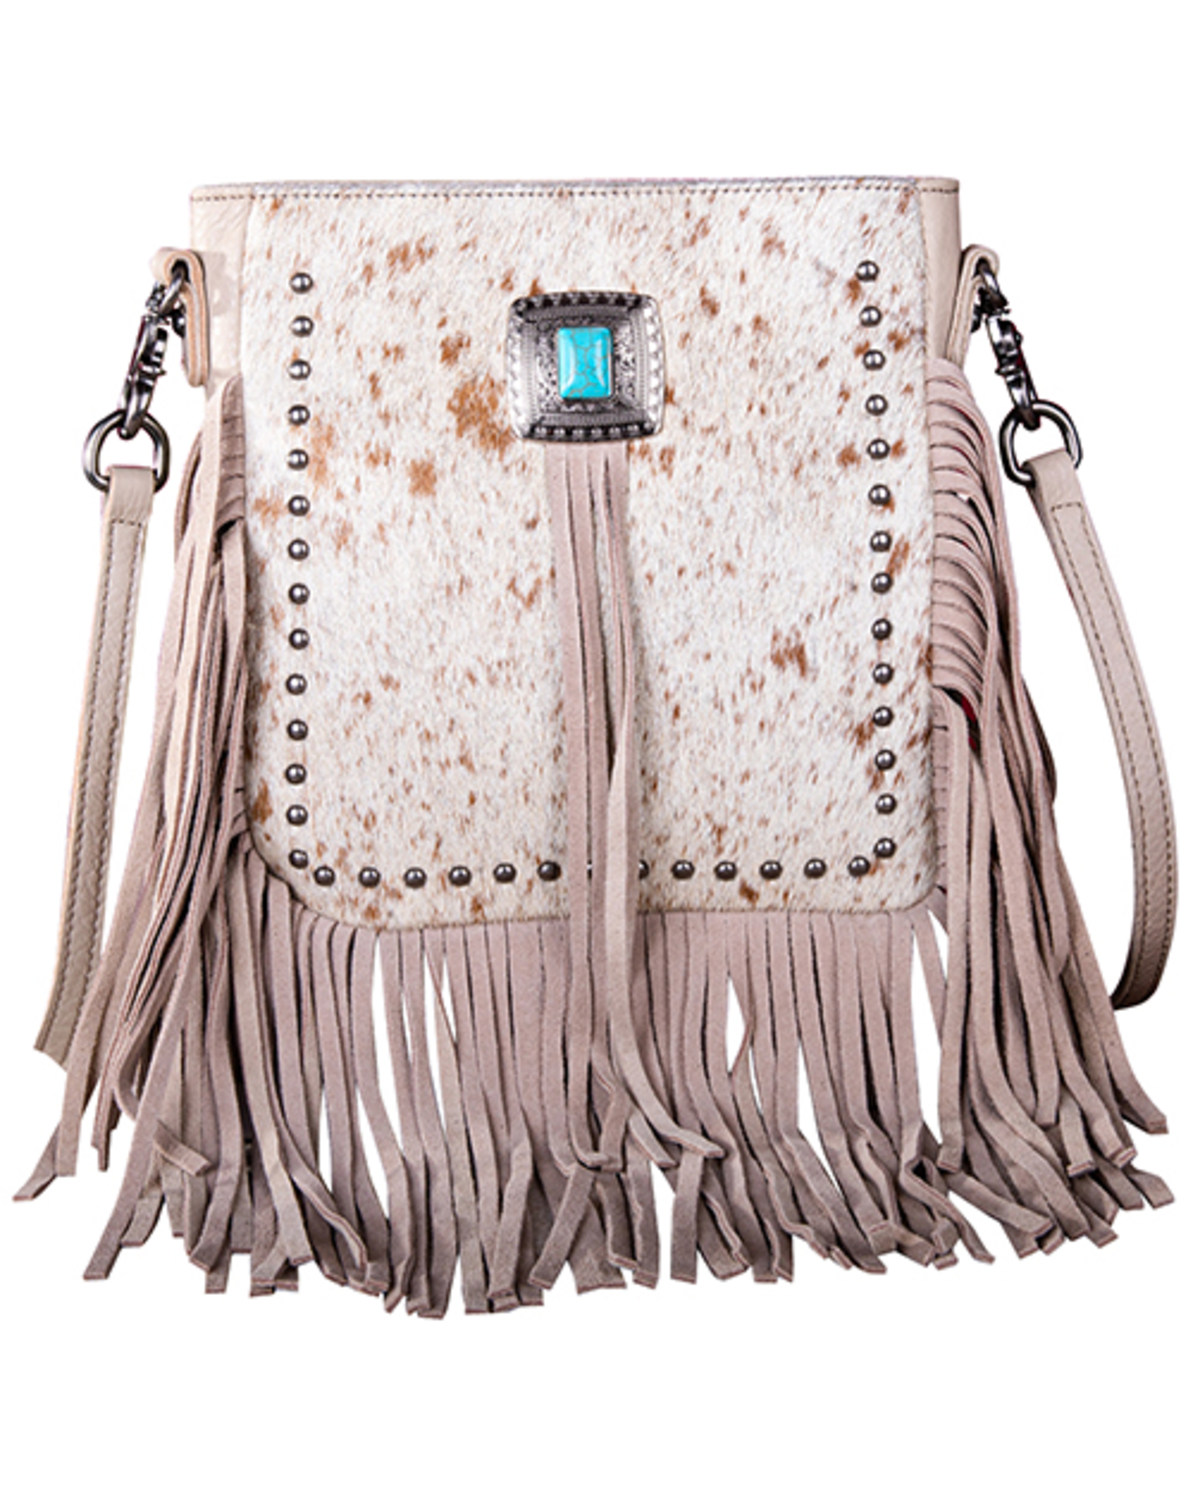 Montana West Women's Hairon Fringe Leather Crossbody Bag